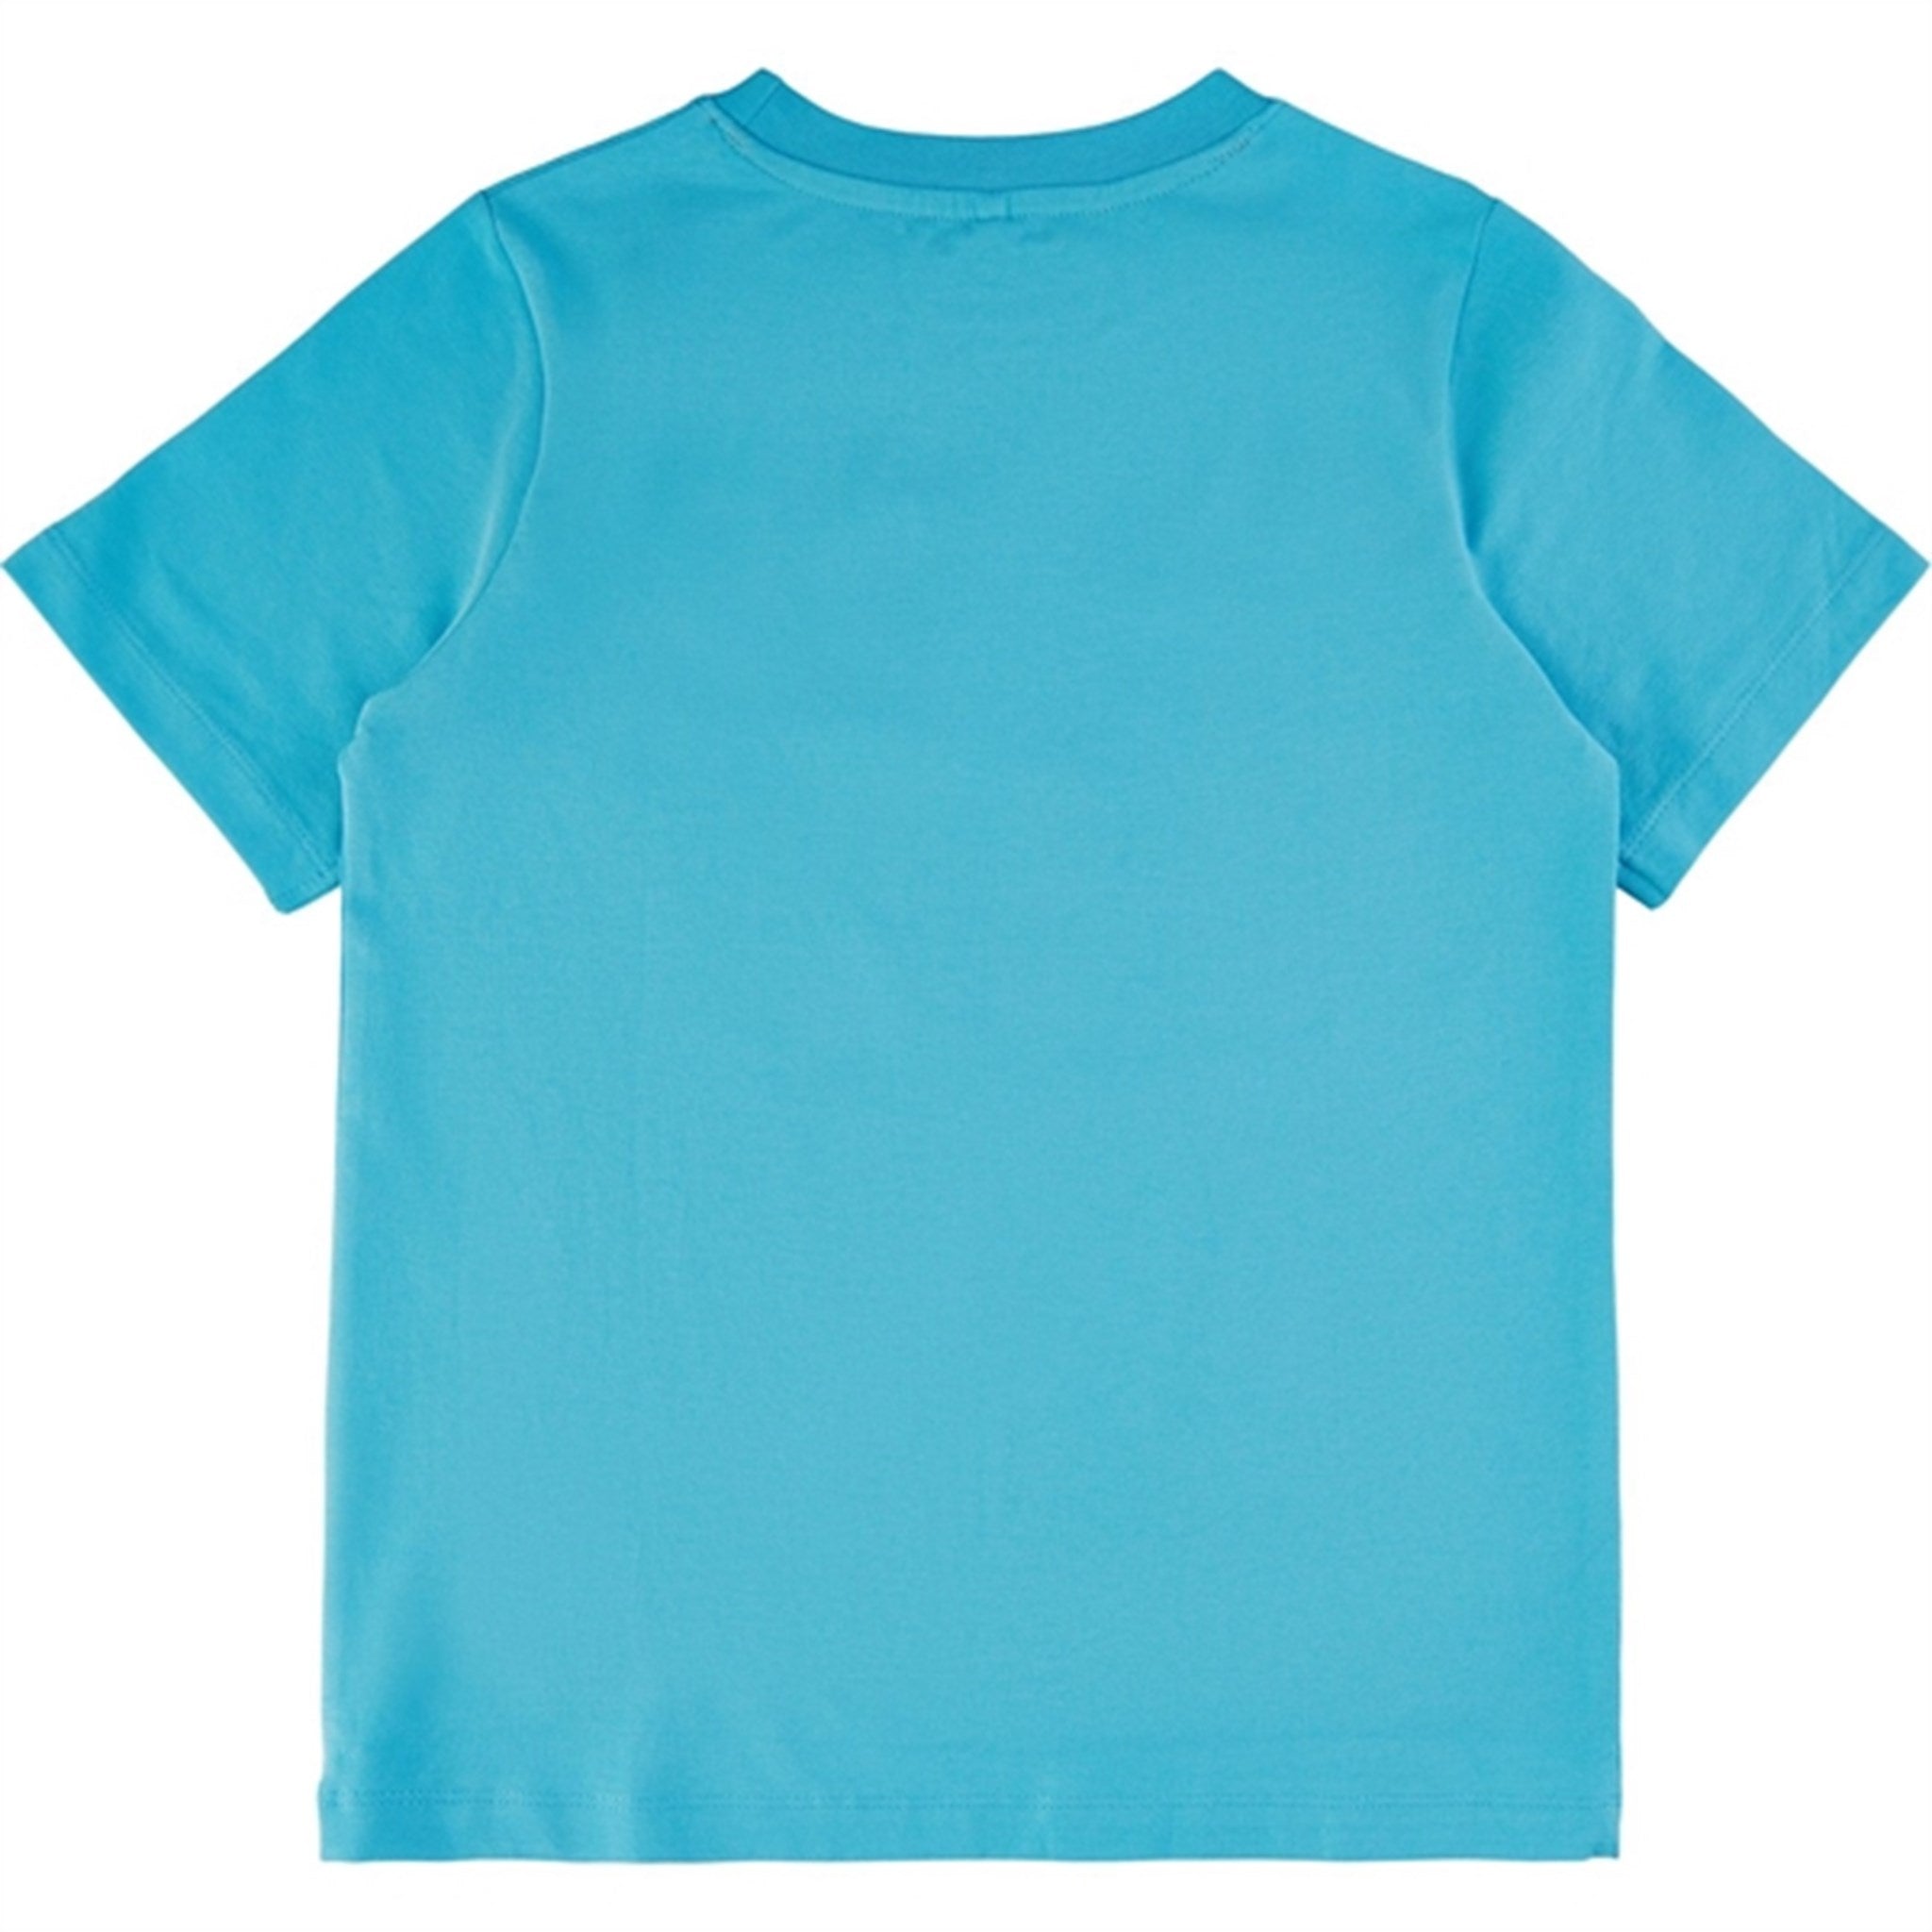 THE NEW Blue Mist Gilbert T-shirt 5